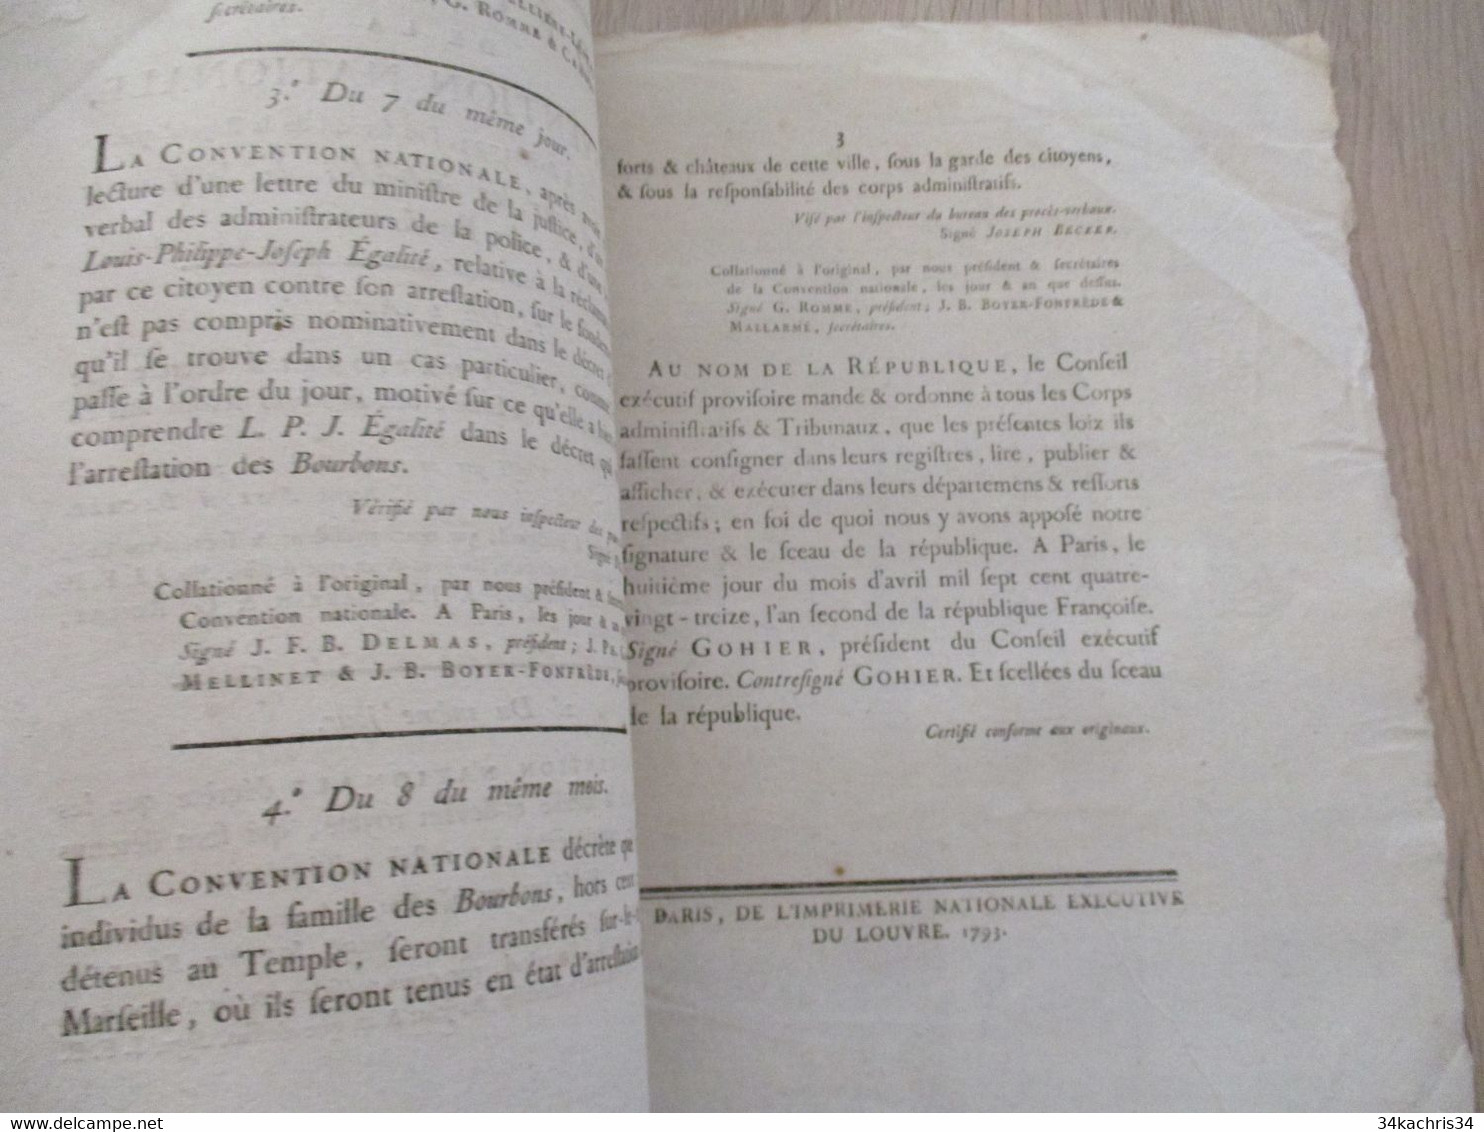 Décret De La Convention Nationale 1793 Révolution Relatifs à Tous Les Individus De La Famille Des Bourbons - Wetten & Decreten